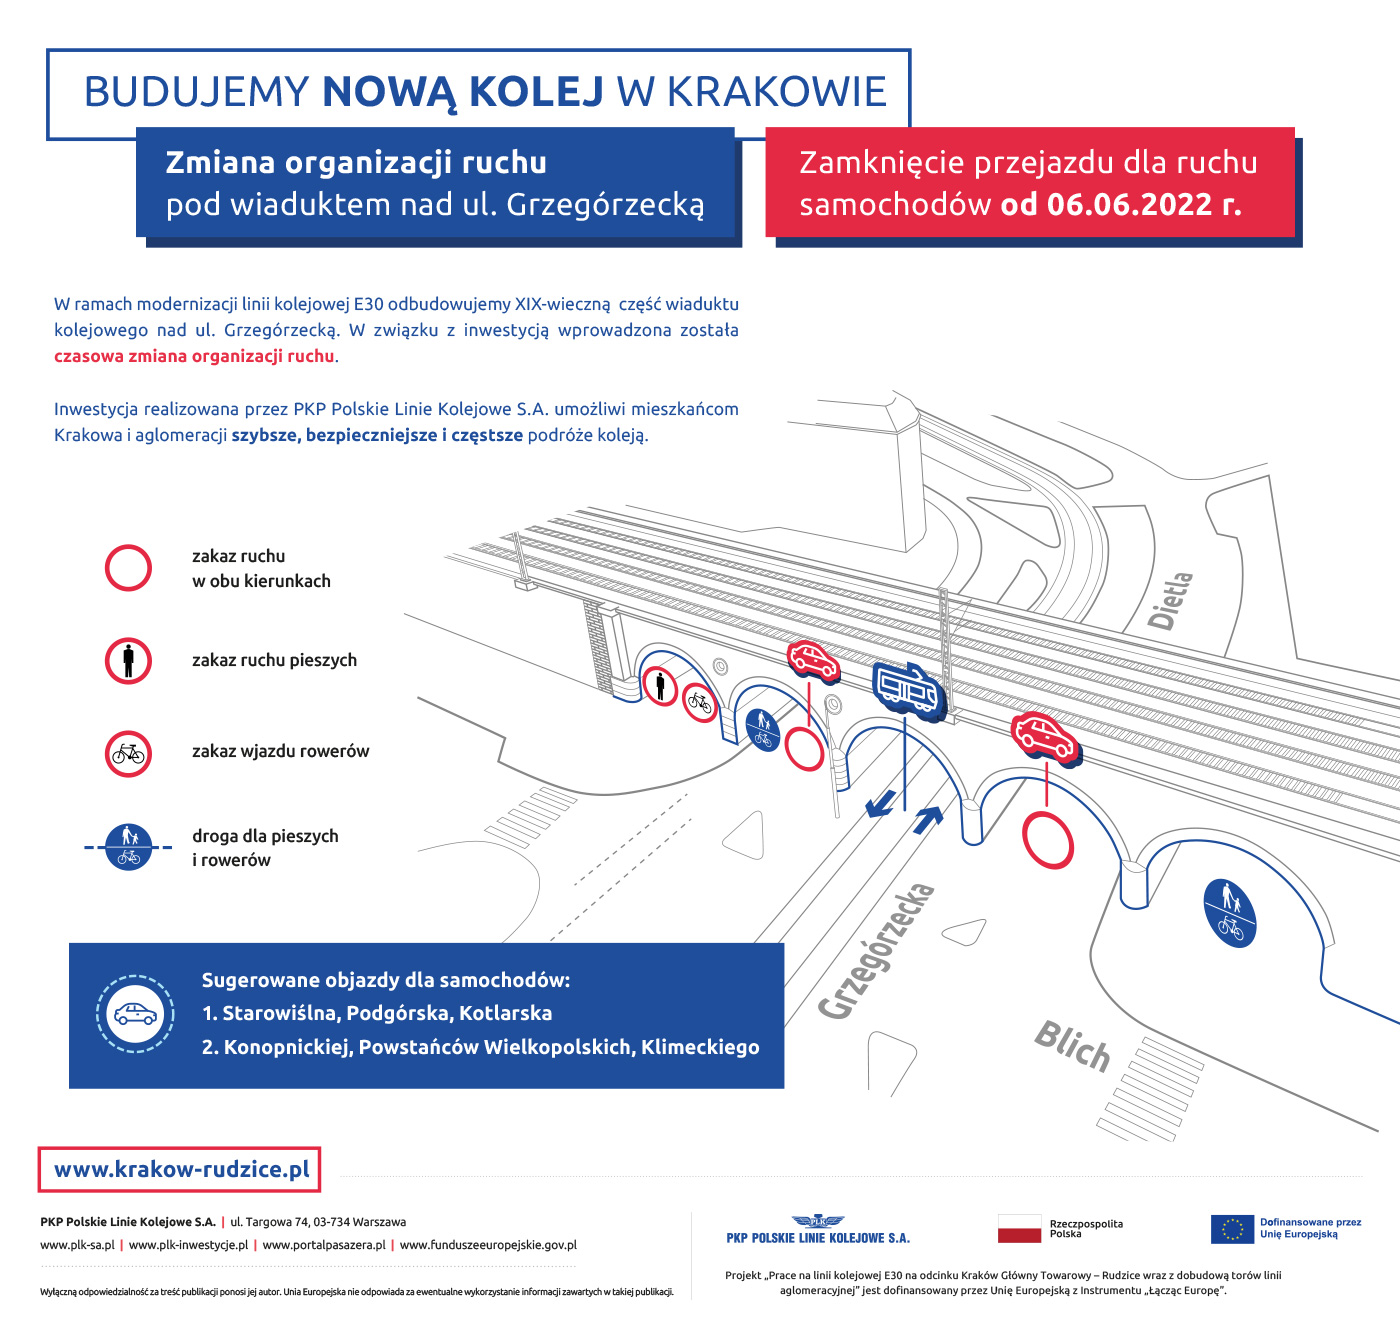 Infografika przedstawia zmianę organizacji ruchu pod wiaduktem na ul. Grzegórzeckiej w Krakowie, która nastąpi od 6 czerwca 2022 roku.